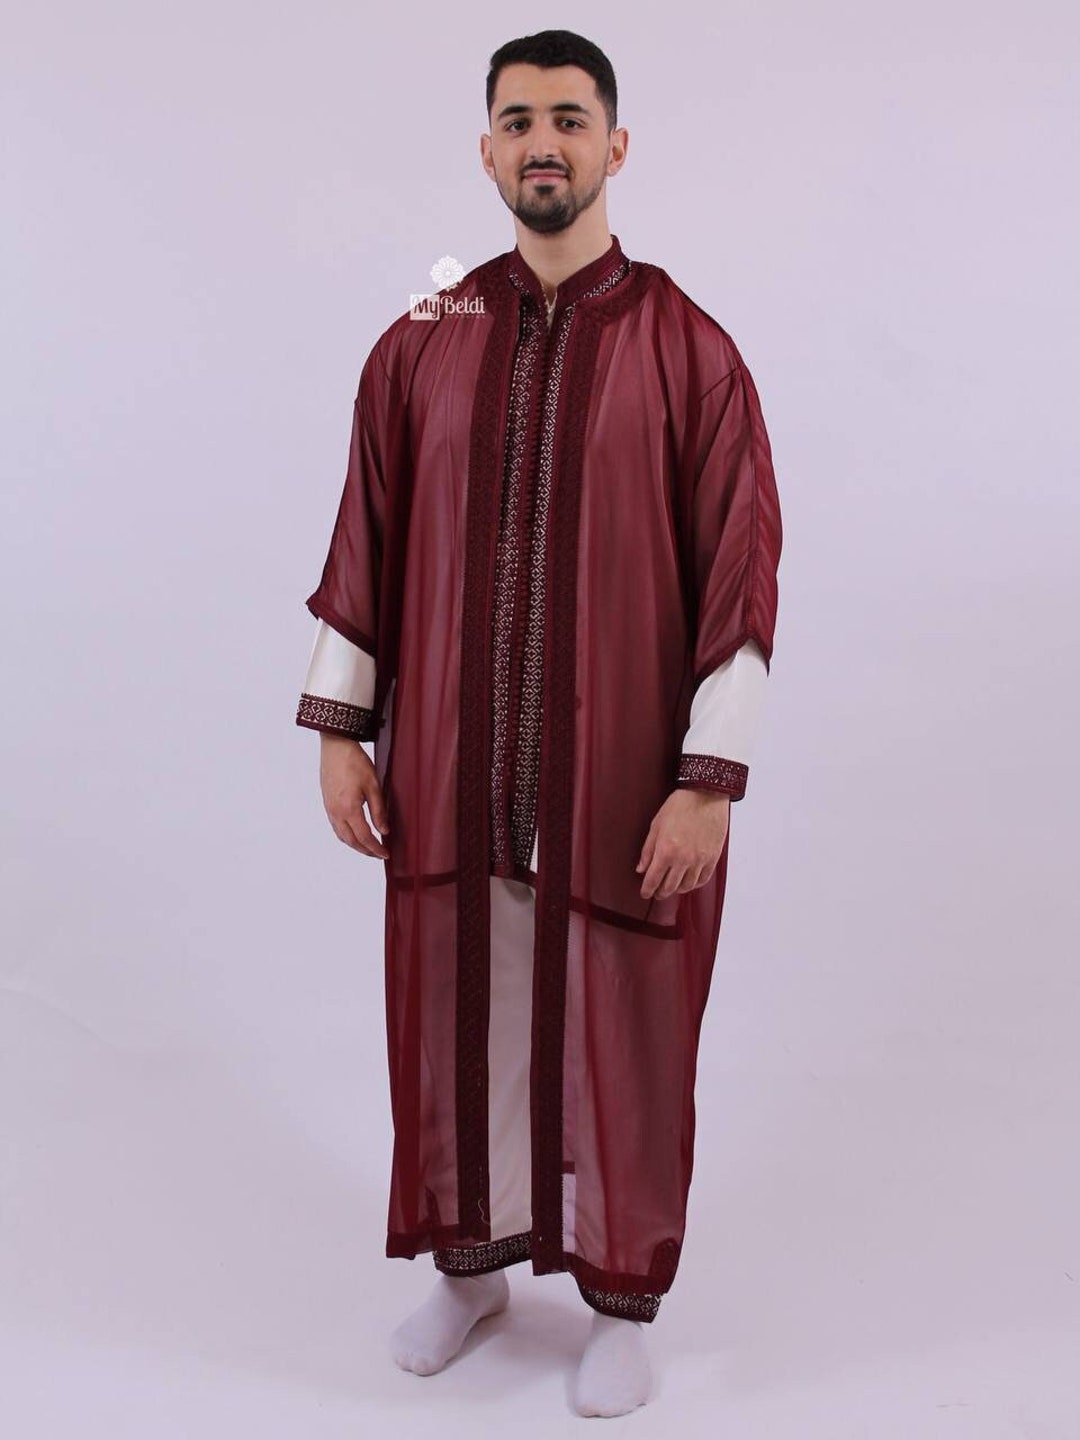 Chilaba Djellaba Granate Burdeos Marroquí Para Hombre. Cómoda Y Elegante  Para Utilizar En Casa O Fiestas O Eventos. Ancho 70 Cm - Camisas Musulmanas  De Hombre - AliExpress